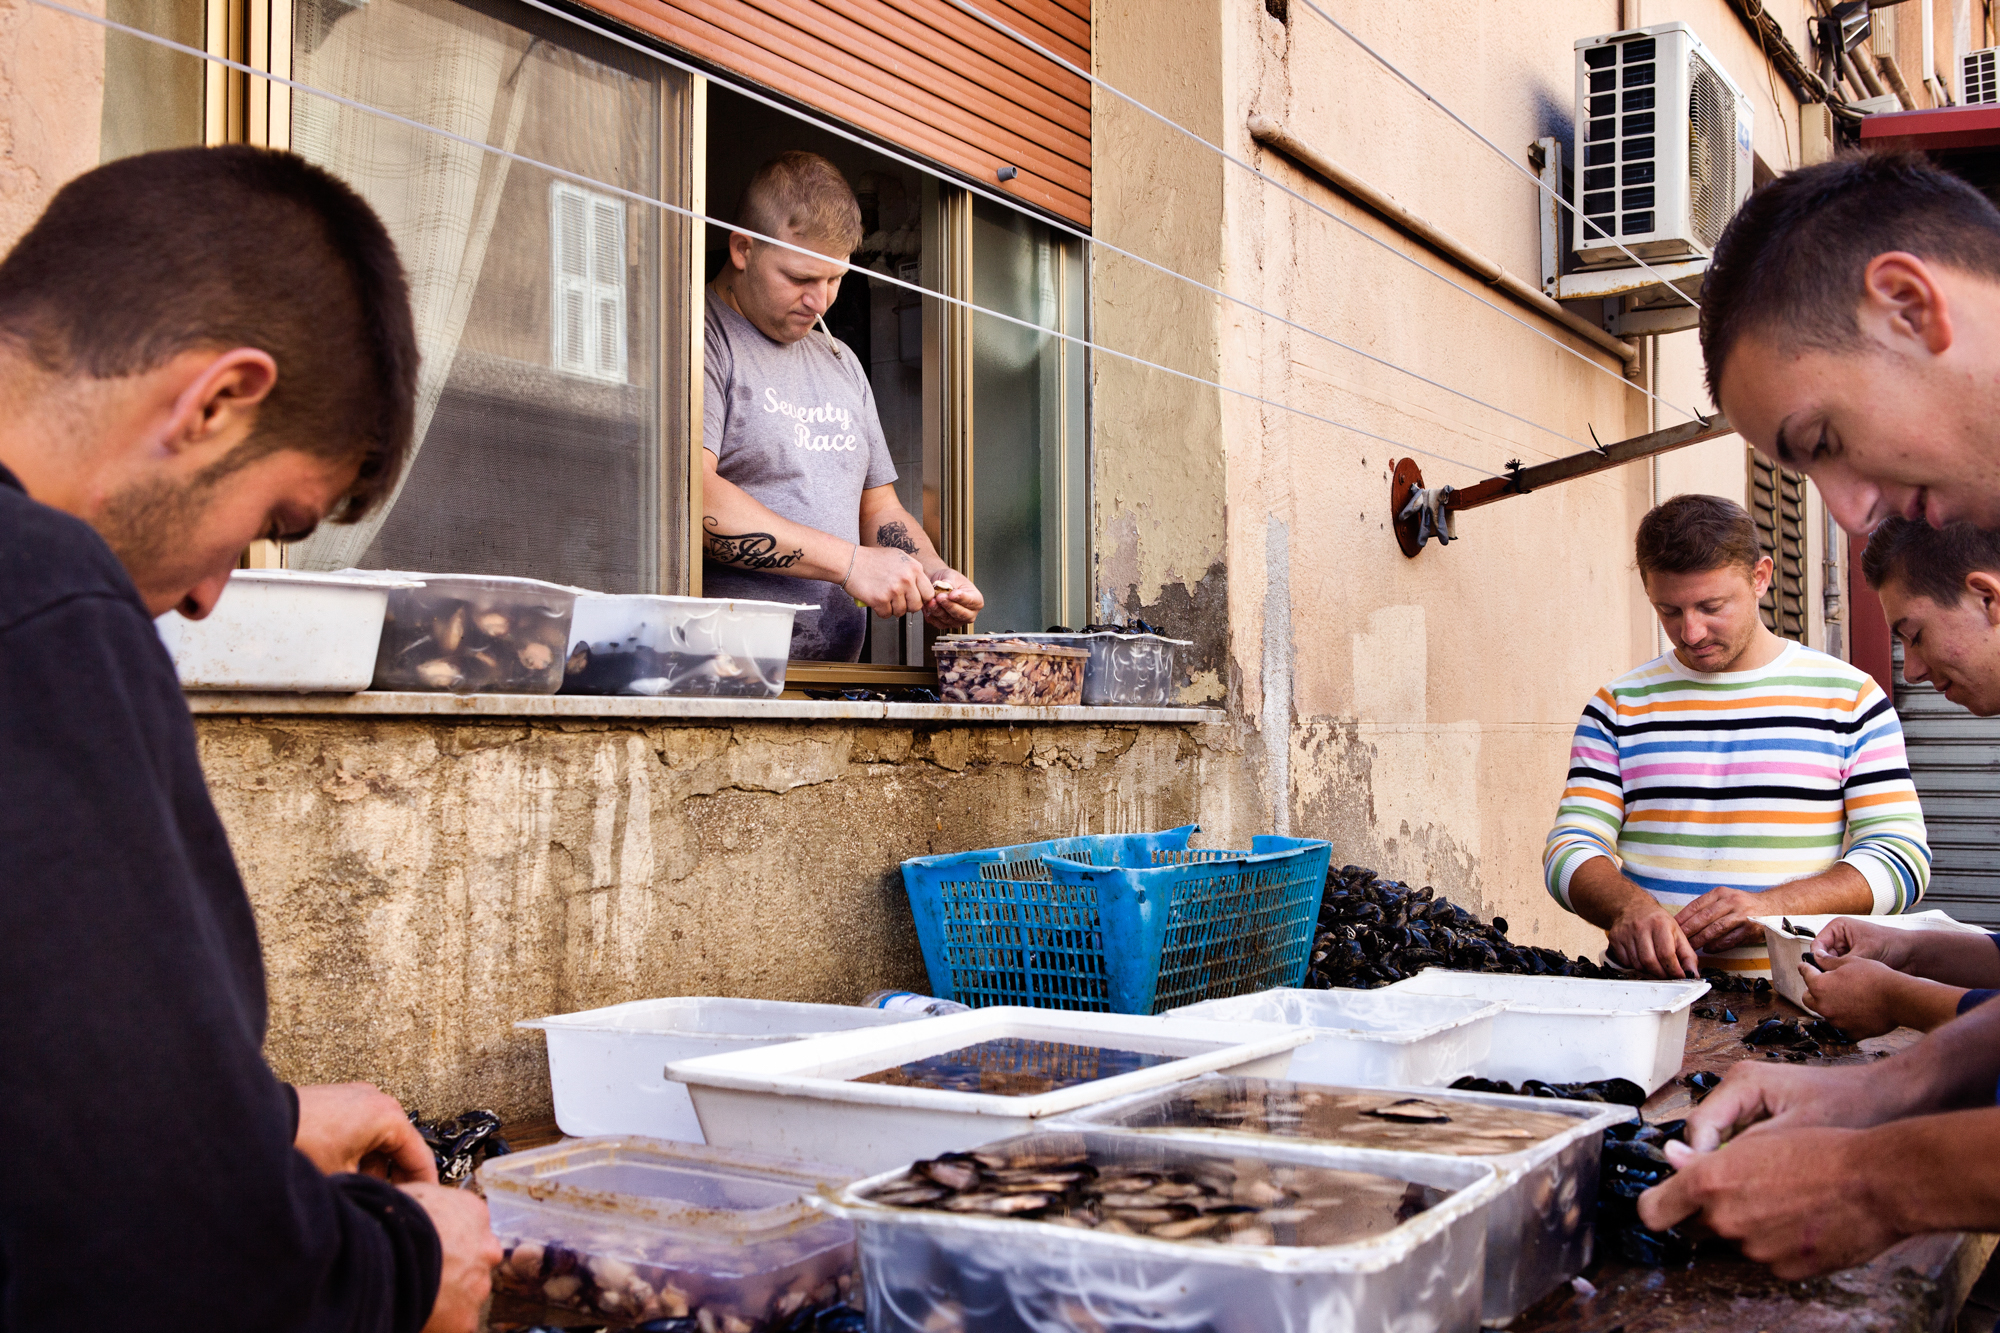  Taranto, Italia, 26 Settembre 2013. Armando e i suoi amici puliscono le cozze nella Città Vecchia. Armando è agli arresti domiciliari, per questo motivo lavora dalla finestra di casa. Nel 2012, a causa dell’alta concentrazione di diossina e Pcb rile